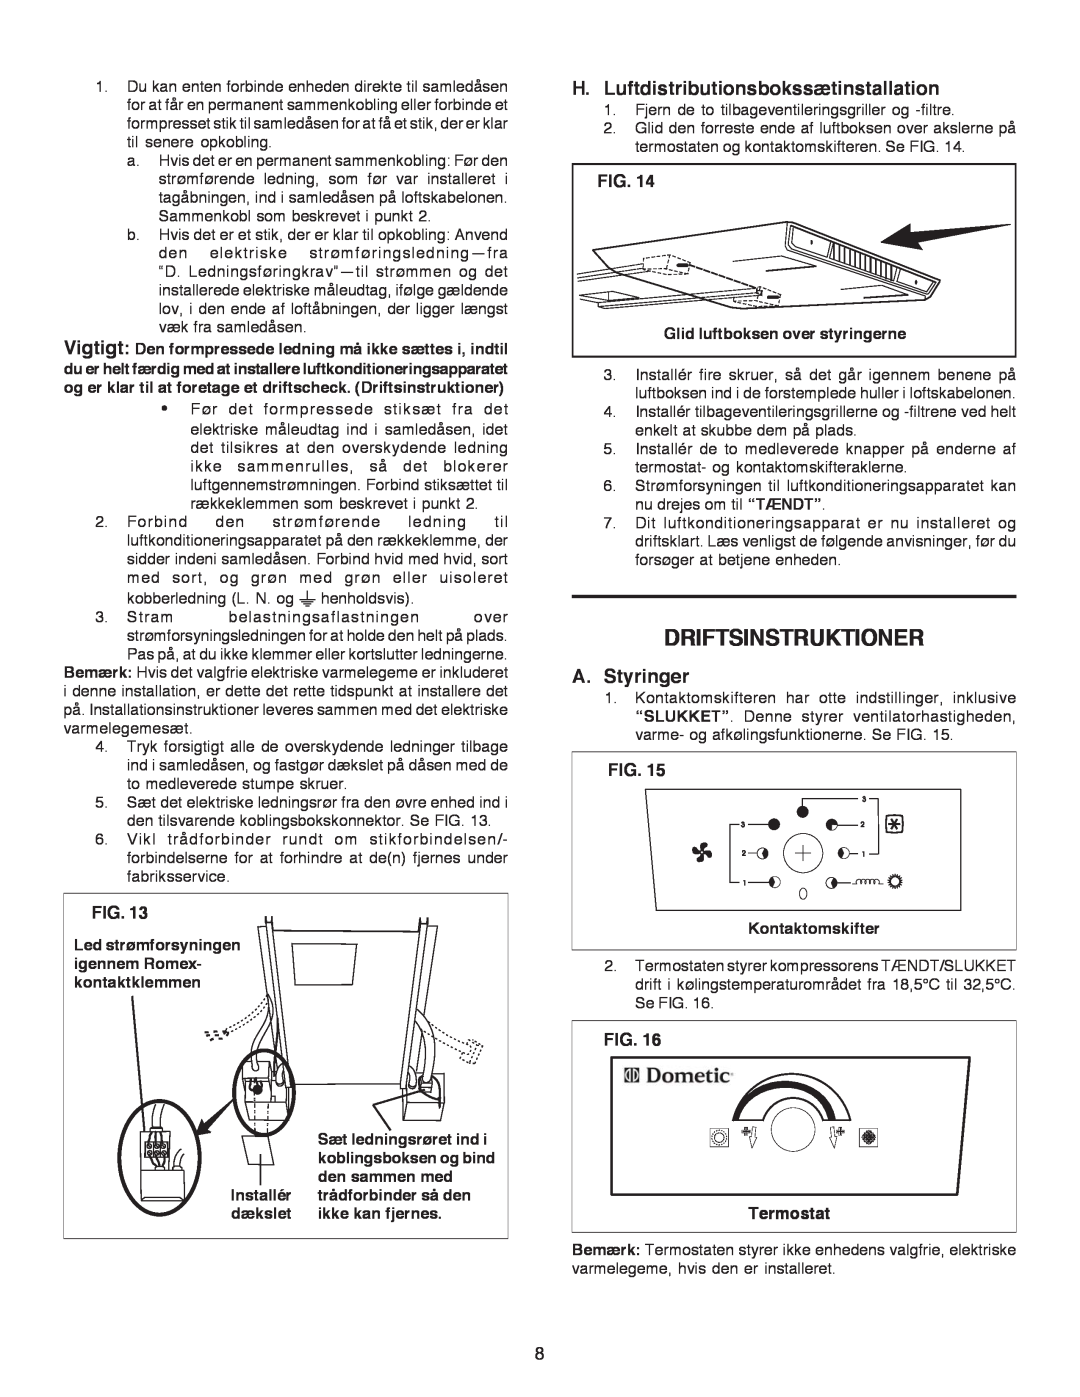 Dometic B3200 manual Driftsinstruktioner, H.Luftdistributionsbokssætinstallation, A.Styringer, Fig 